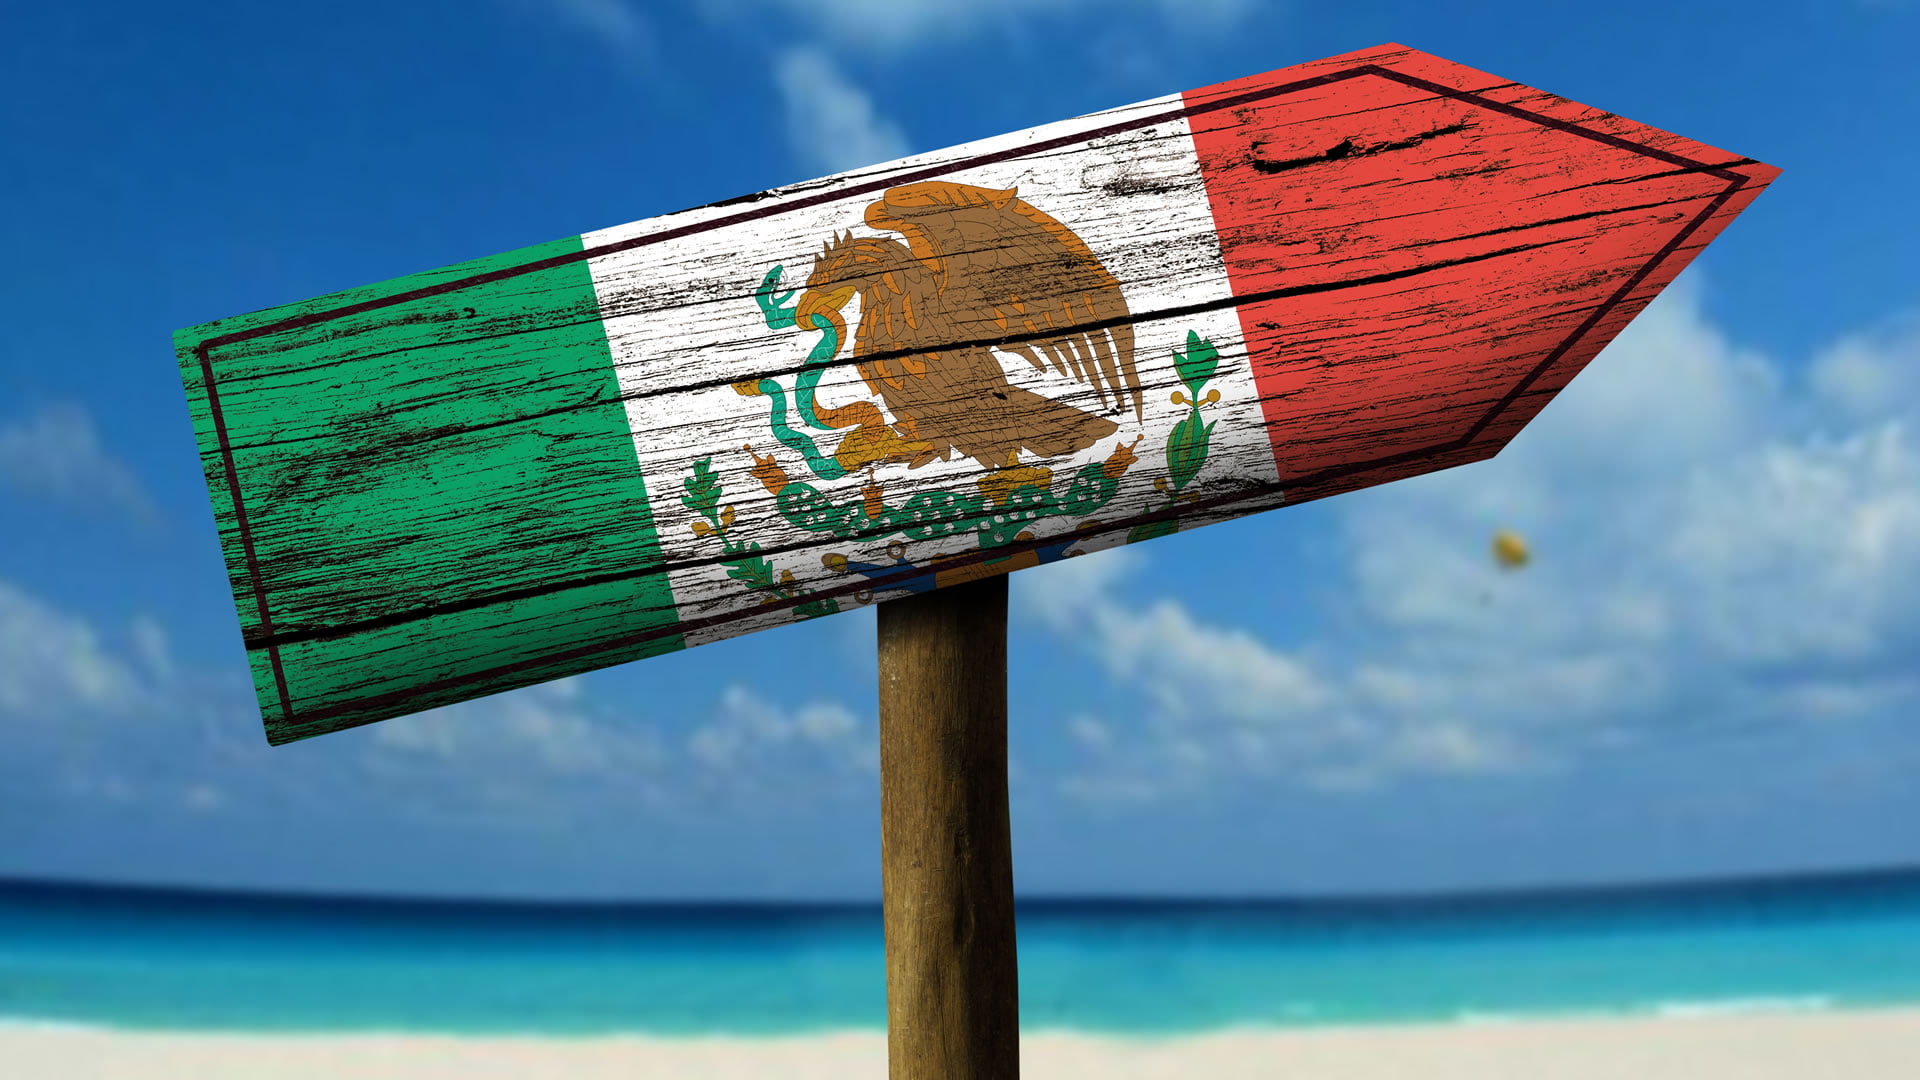 Reisen Sie aus touristischen Gründen nach Mexiko